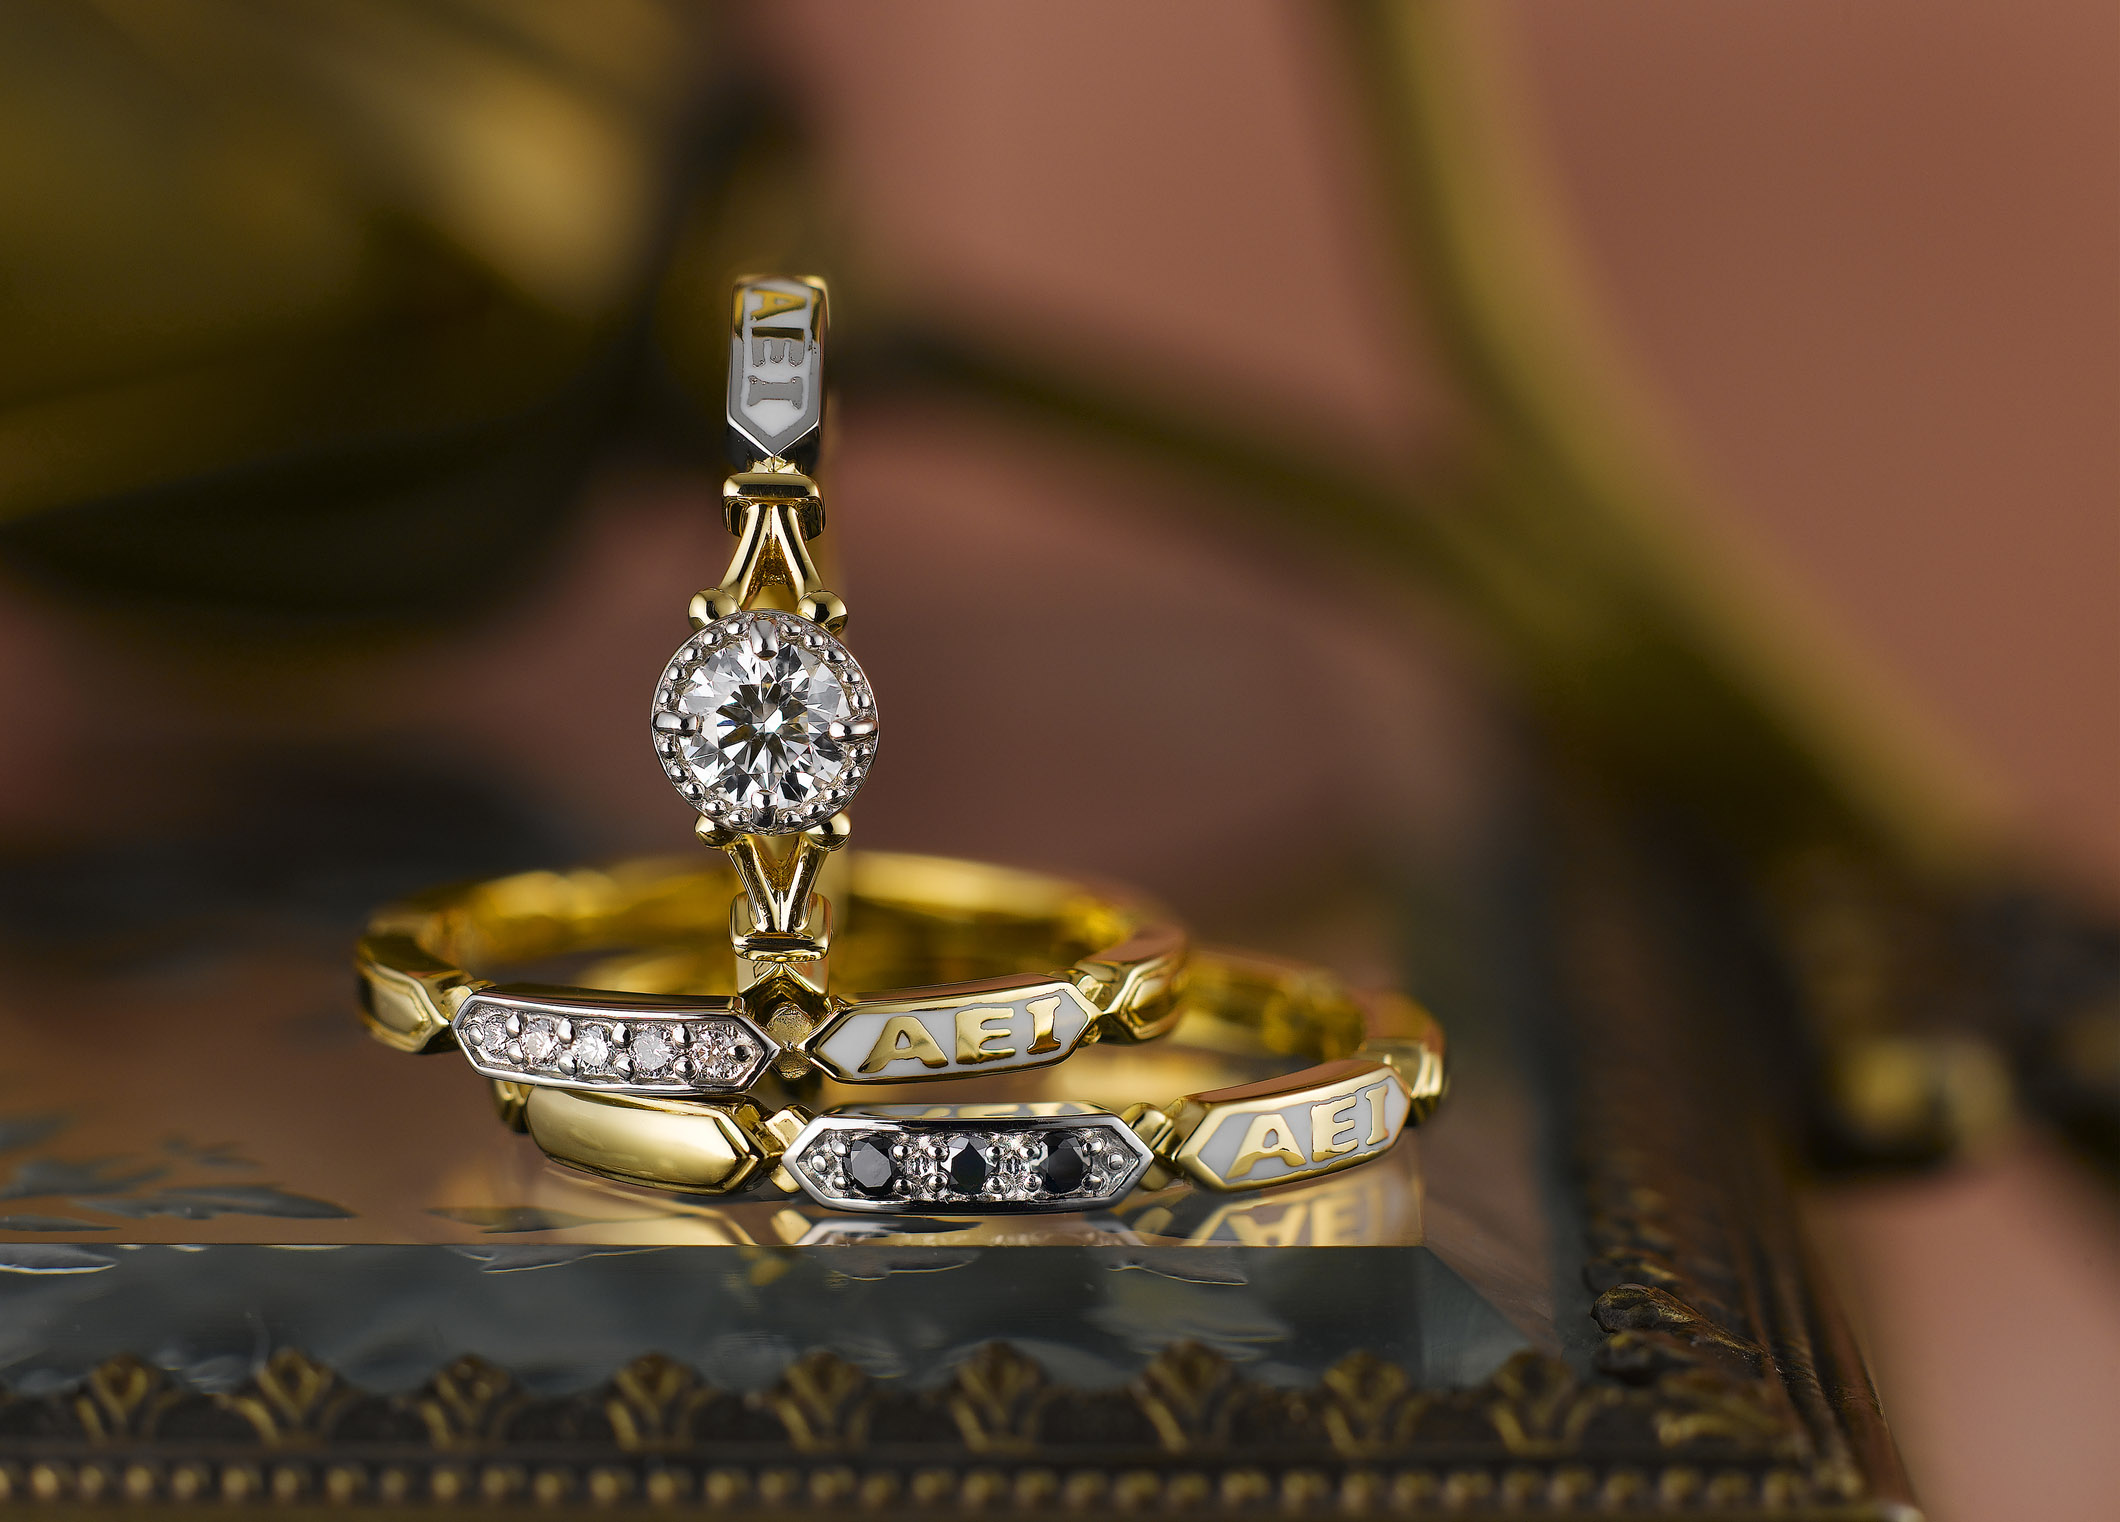 静岡市 おしゃれ女子に人気のアンティーク調ブライダルリングとは Jewelry Story ジュエリーストーリー ブライダル情報 婚約指輪 結婚指輪 結婚式場情報サイト